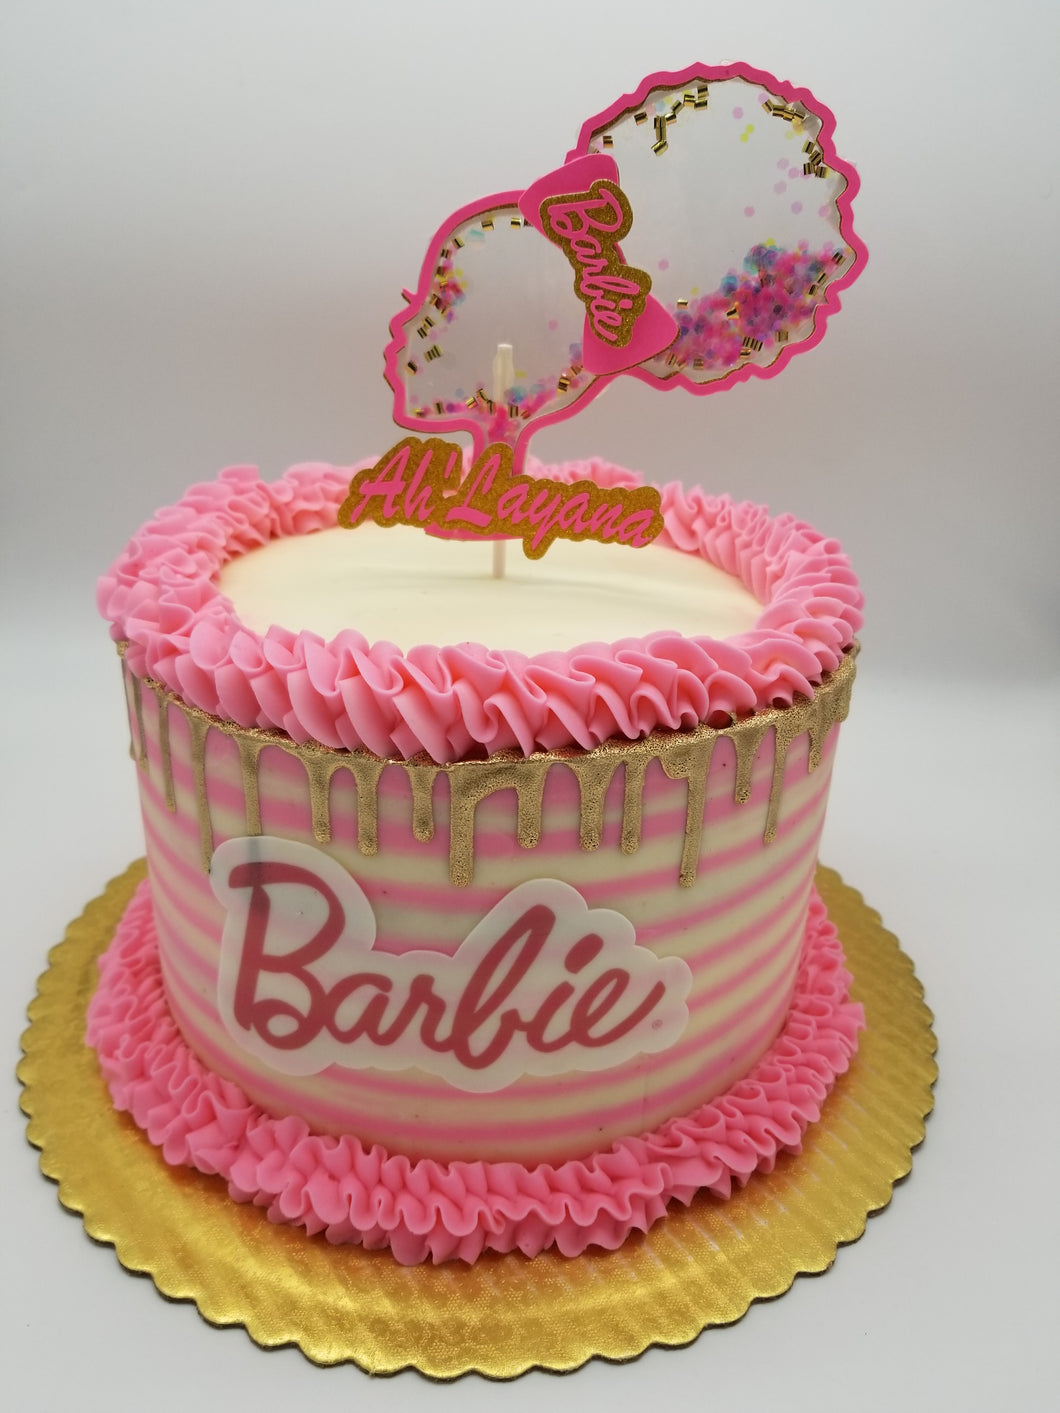 Afro puff Barbie cake topper – Beautiful Designz and Treatz